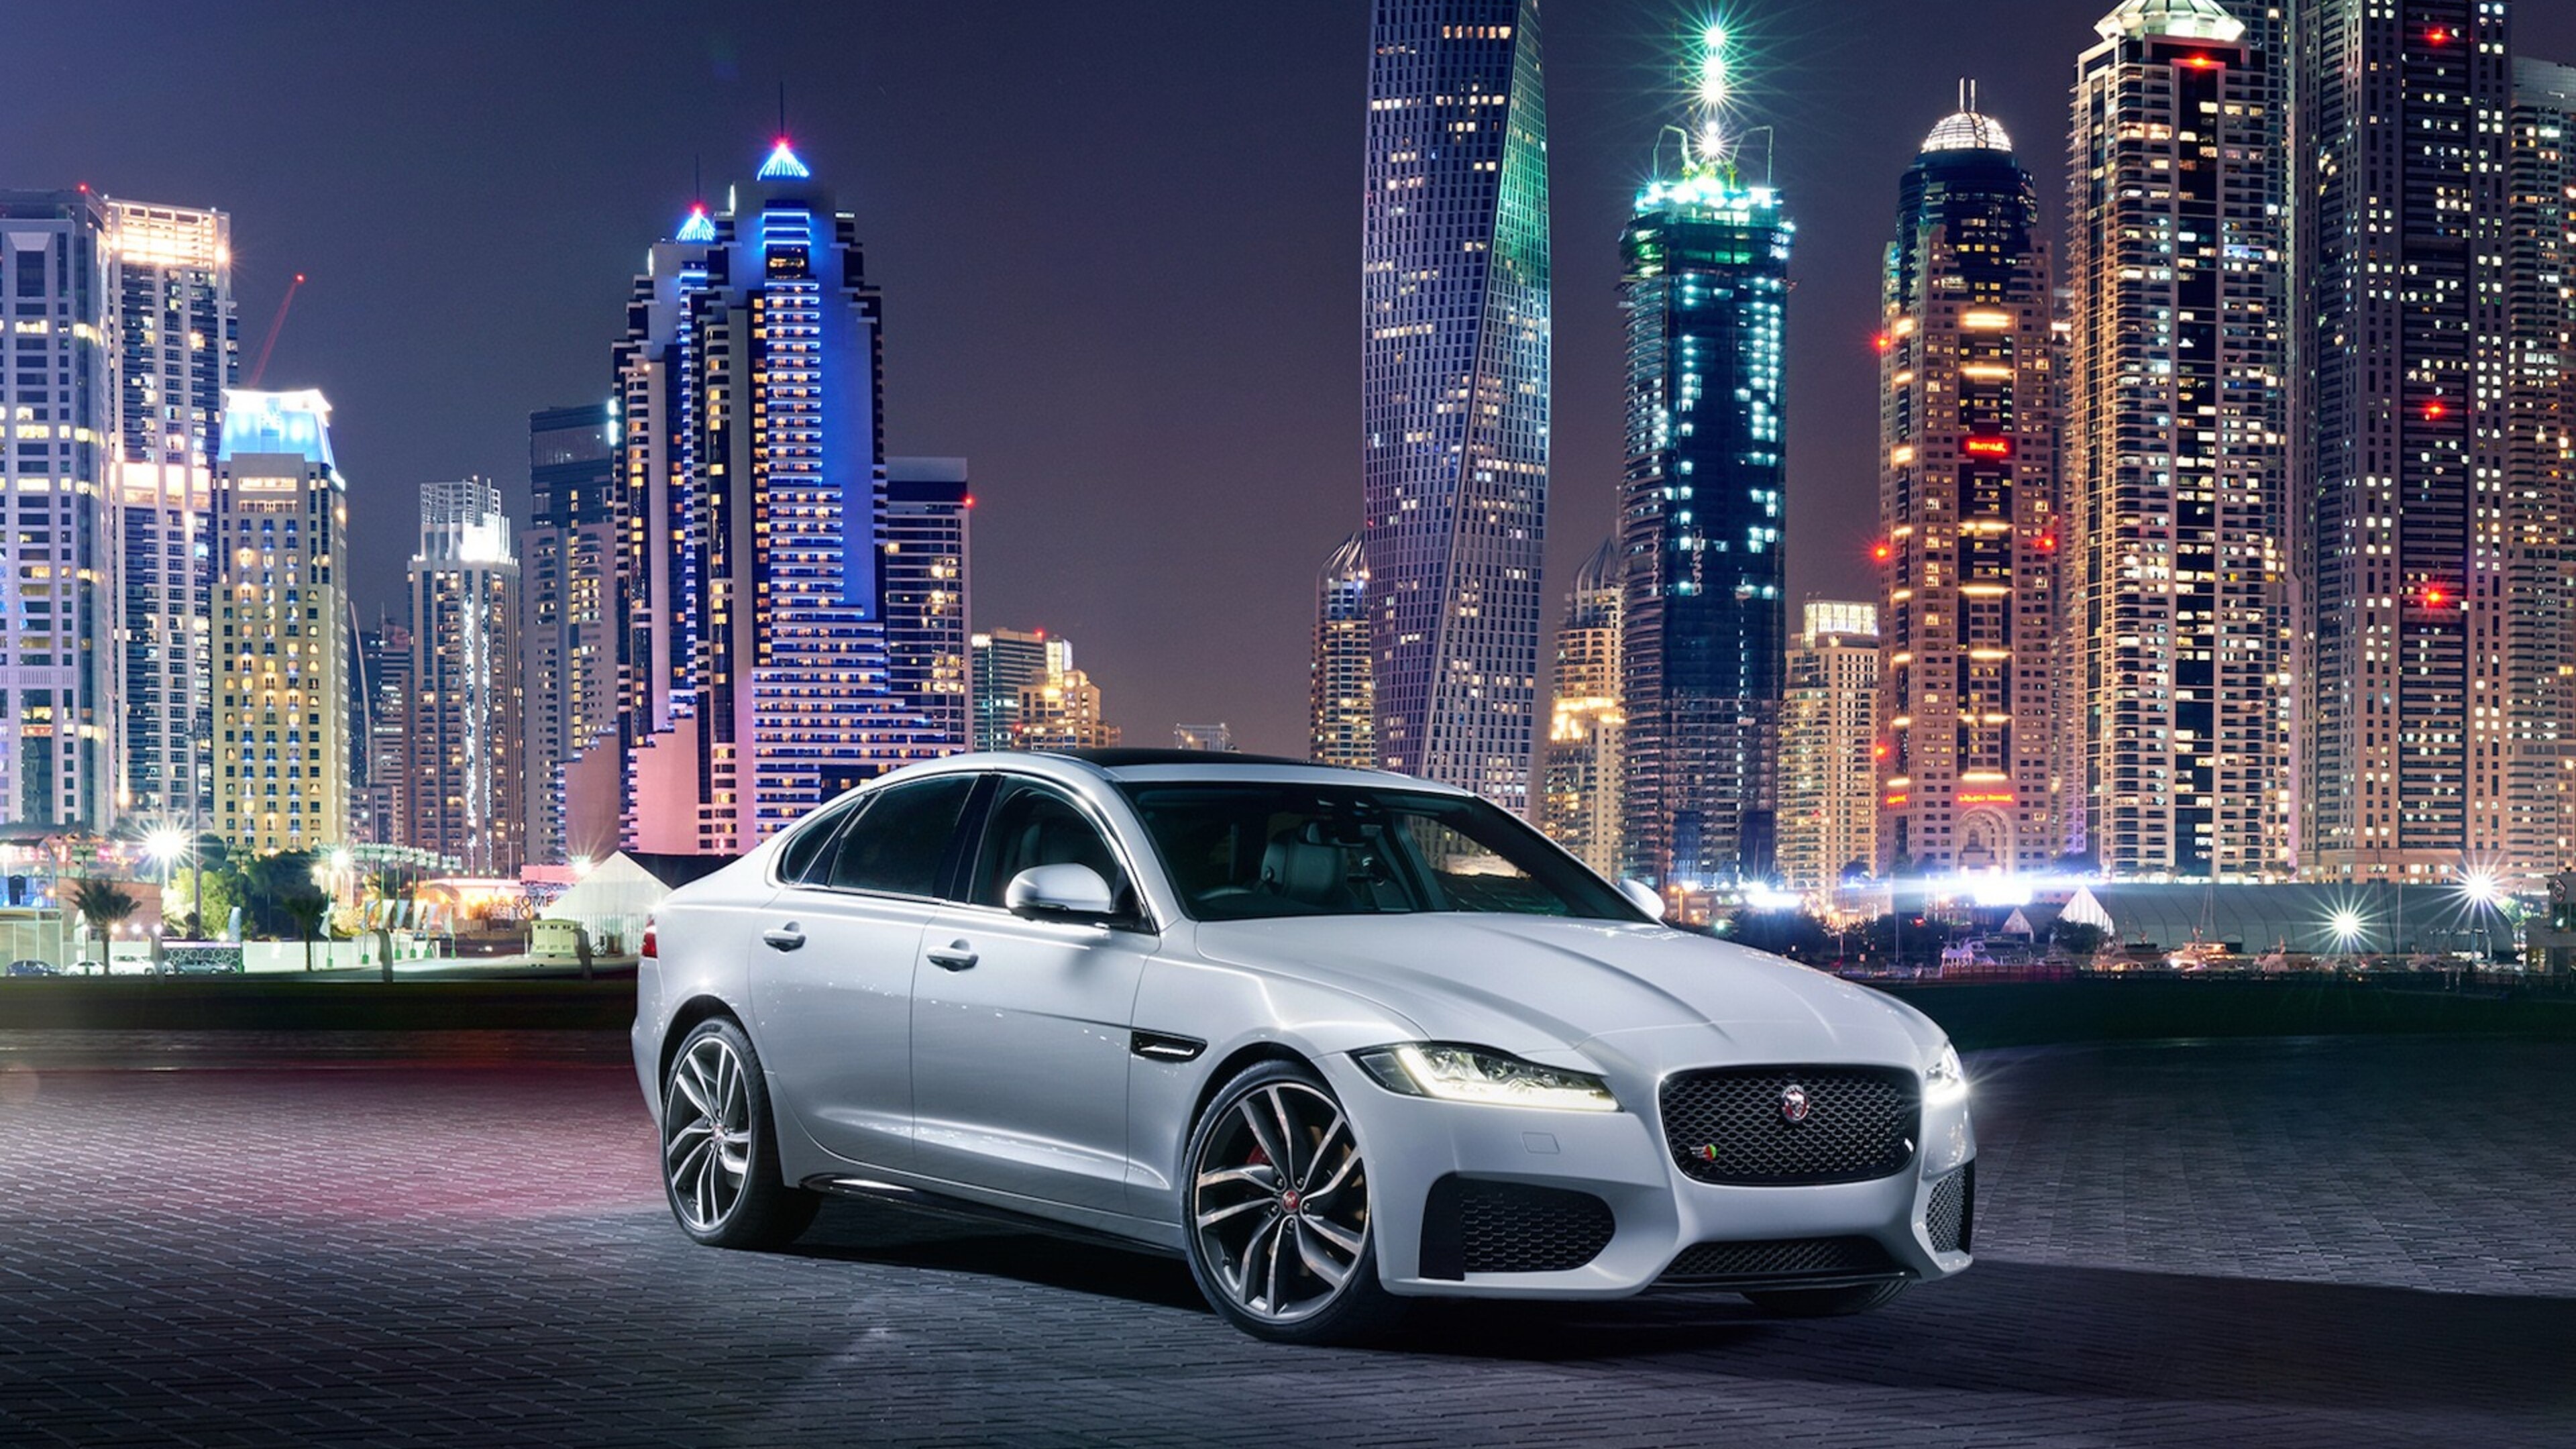 Sleek Jaguar XF, 4K resolution, High-definition images, Captivating visuals, 3840x2160 4K Desktop